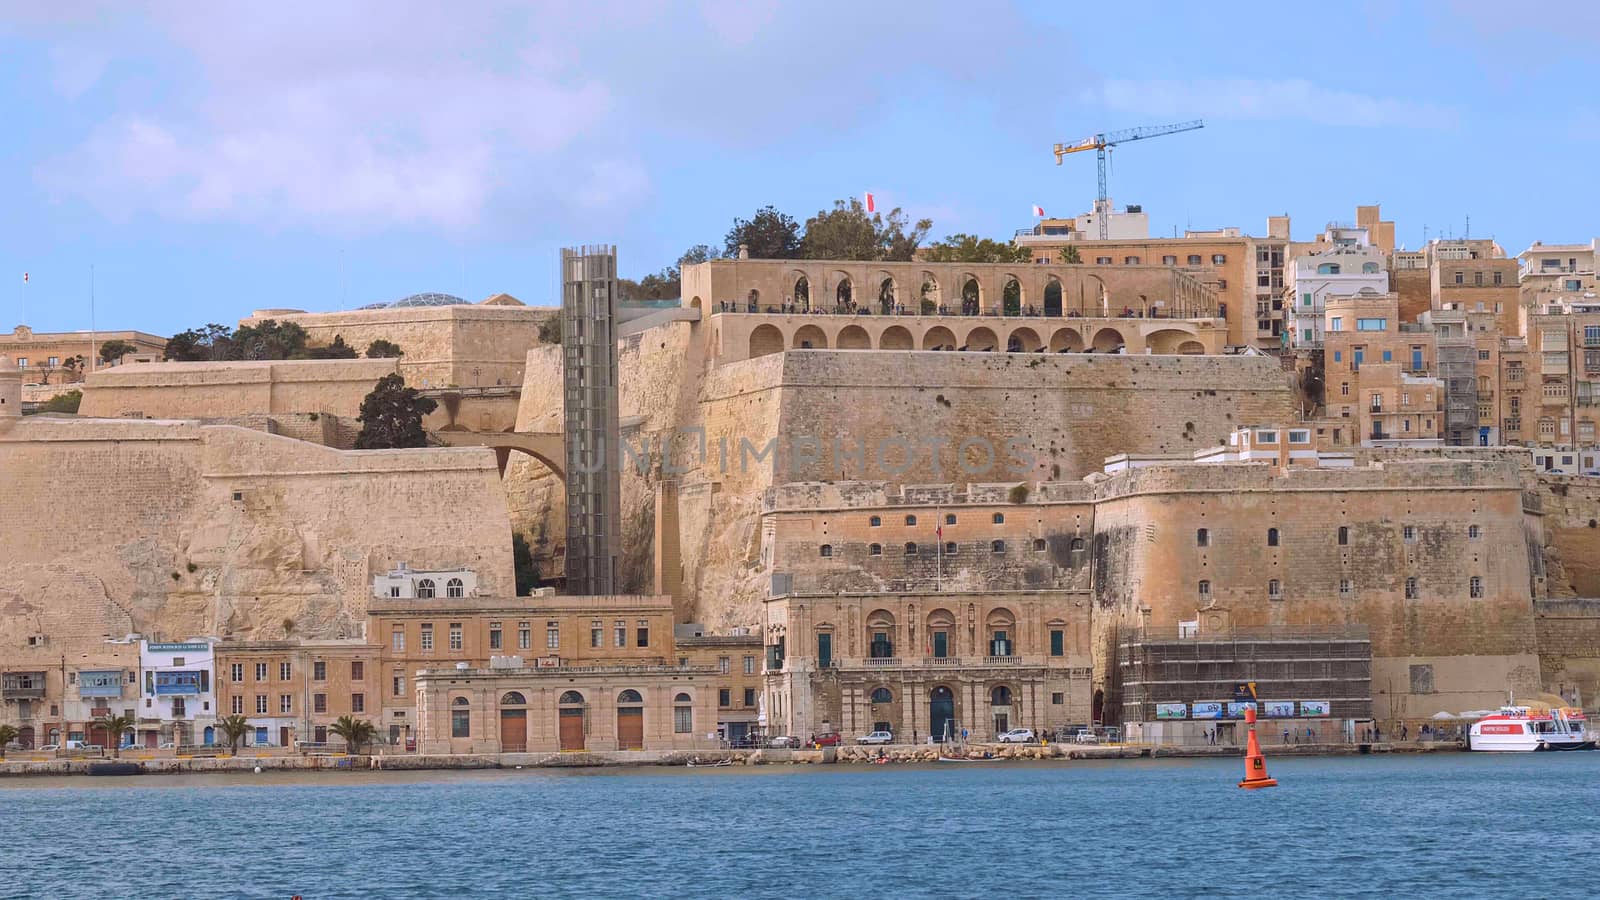 Amazing skyline of Valletta in Malta by Lattwein